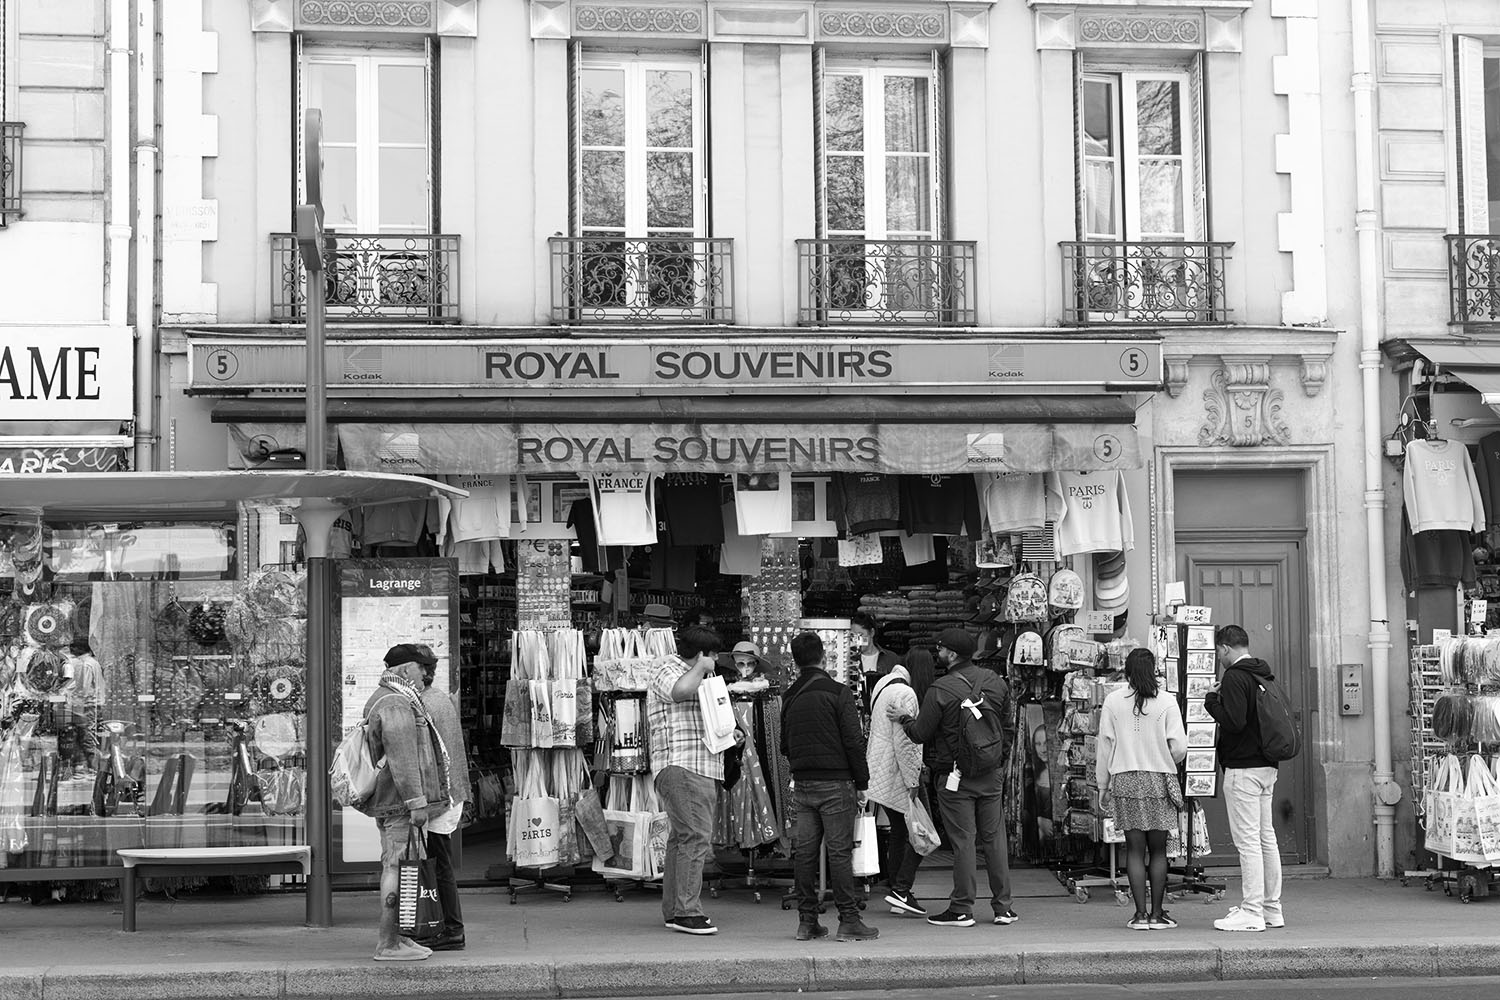 Coco & Voltaire - Royal Souvenirs tourist shop on the left bank in Paris, France